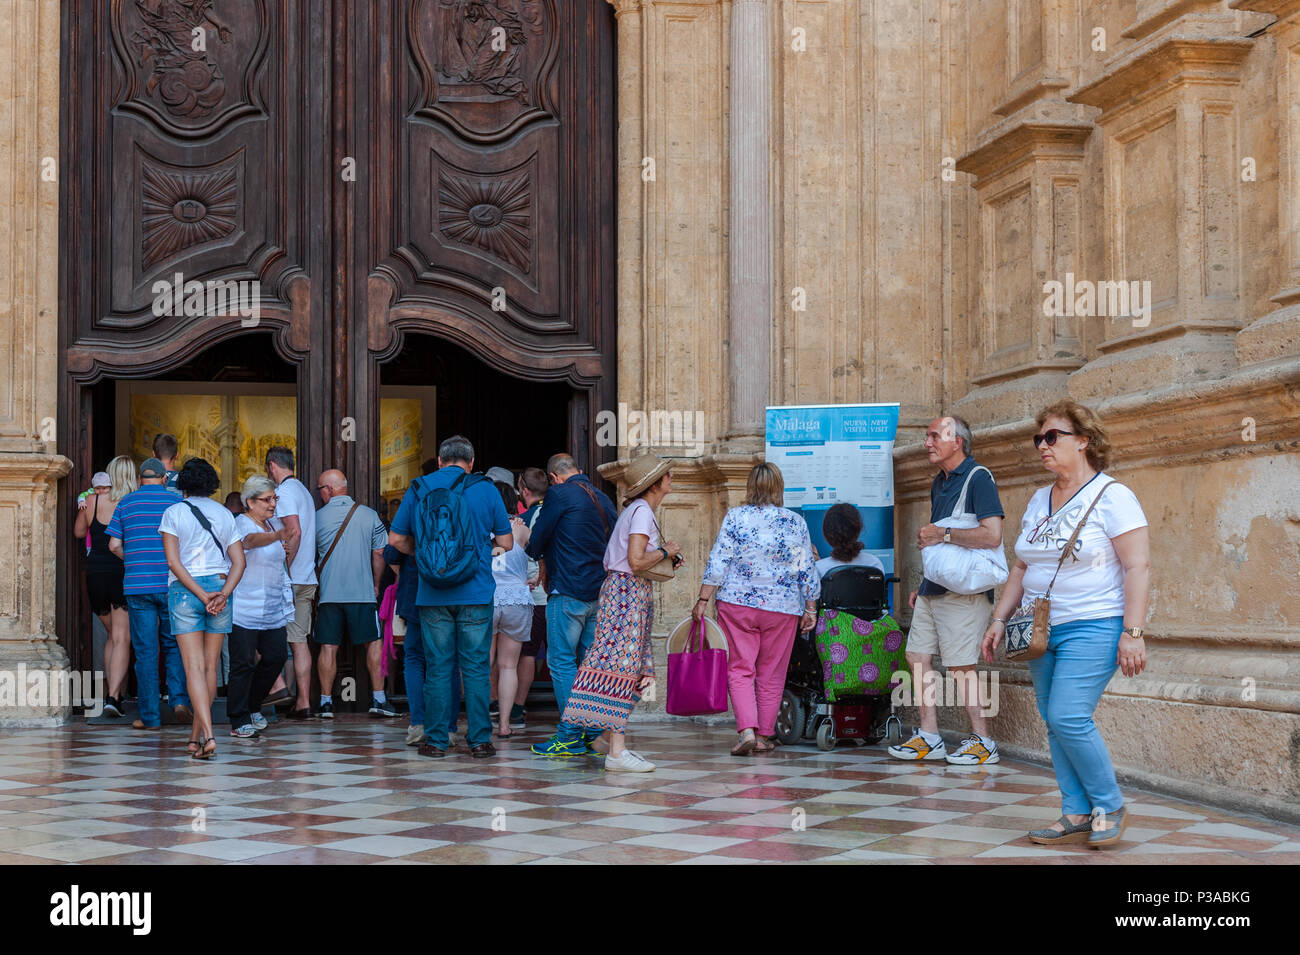 Coda di turisti a pagare per visitare la Cattedrale di Malaga, in Spagna. Foto Stock